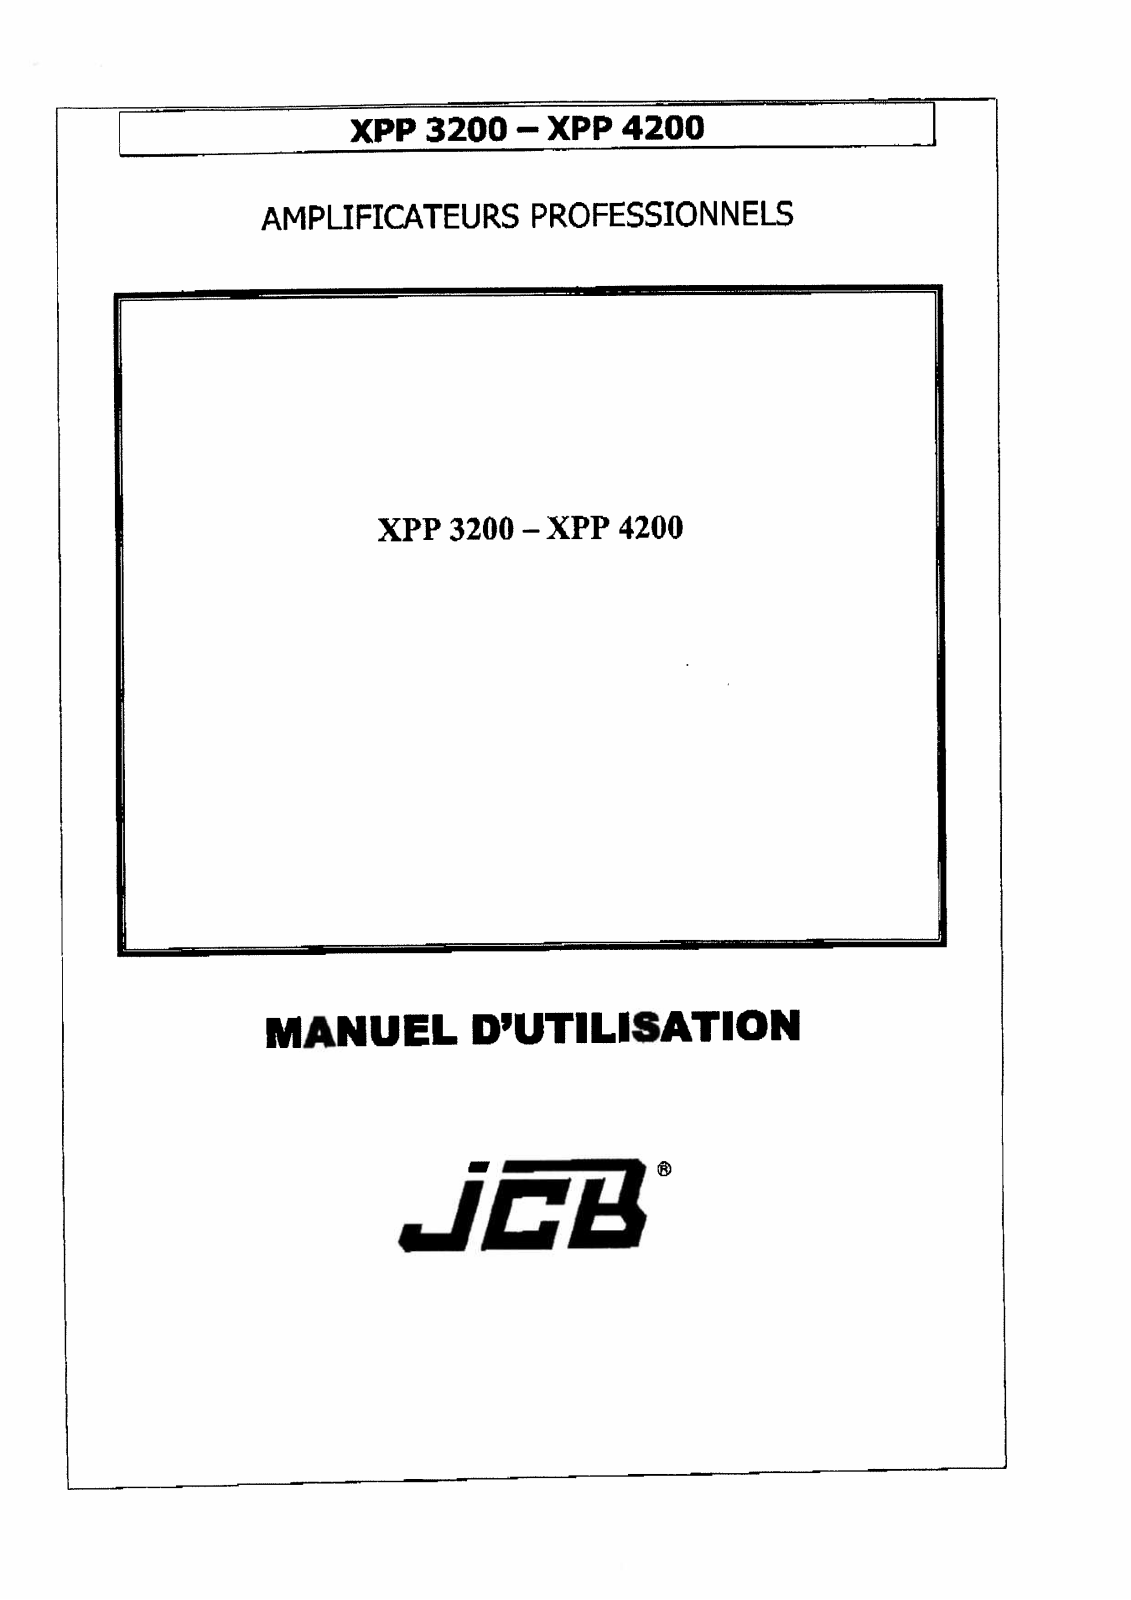 JCB XPP 3200 User Manual